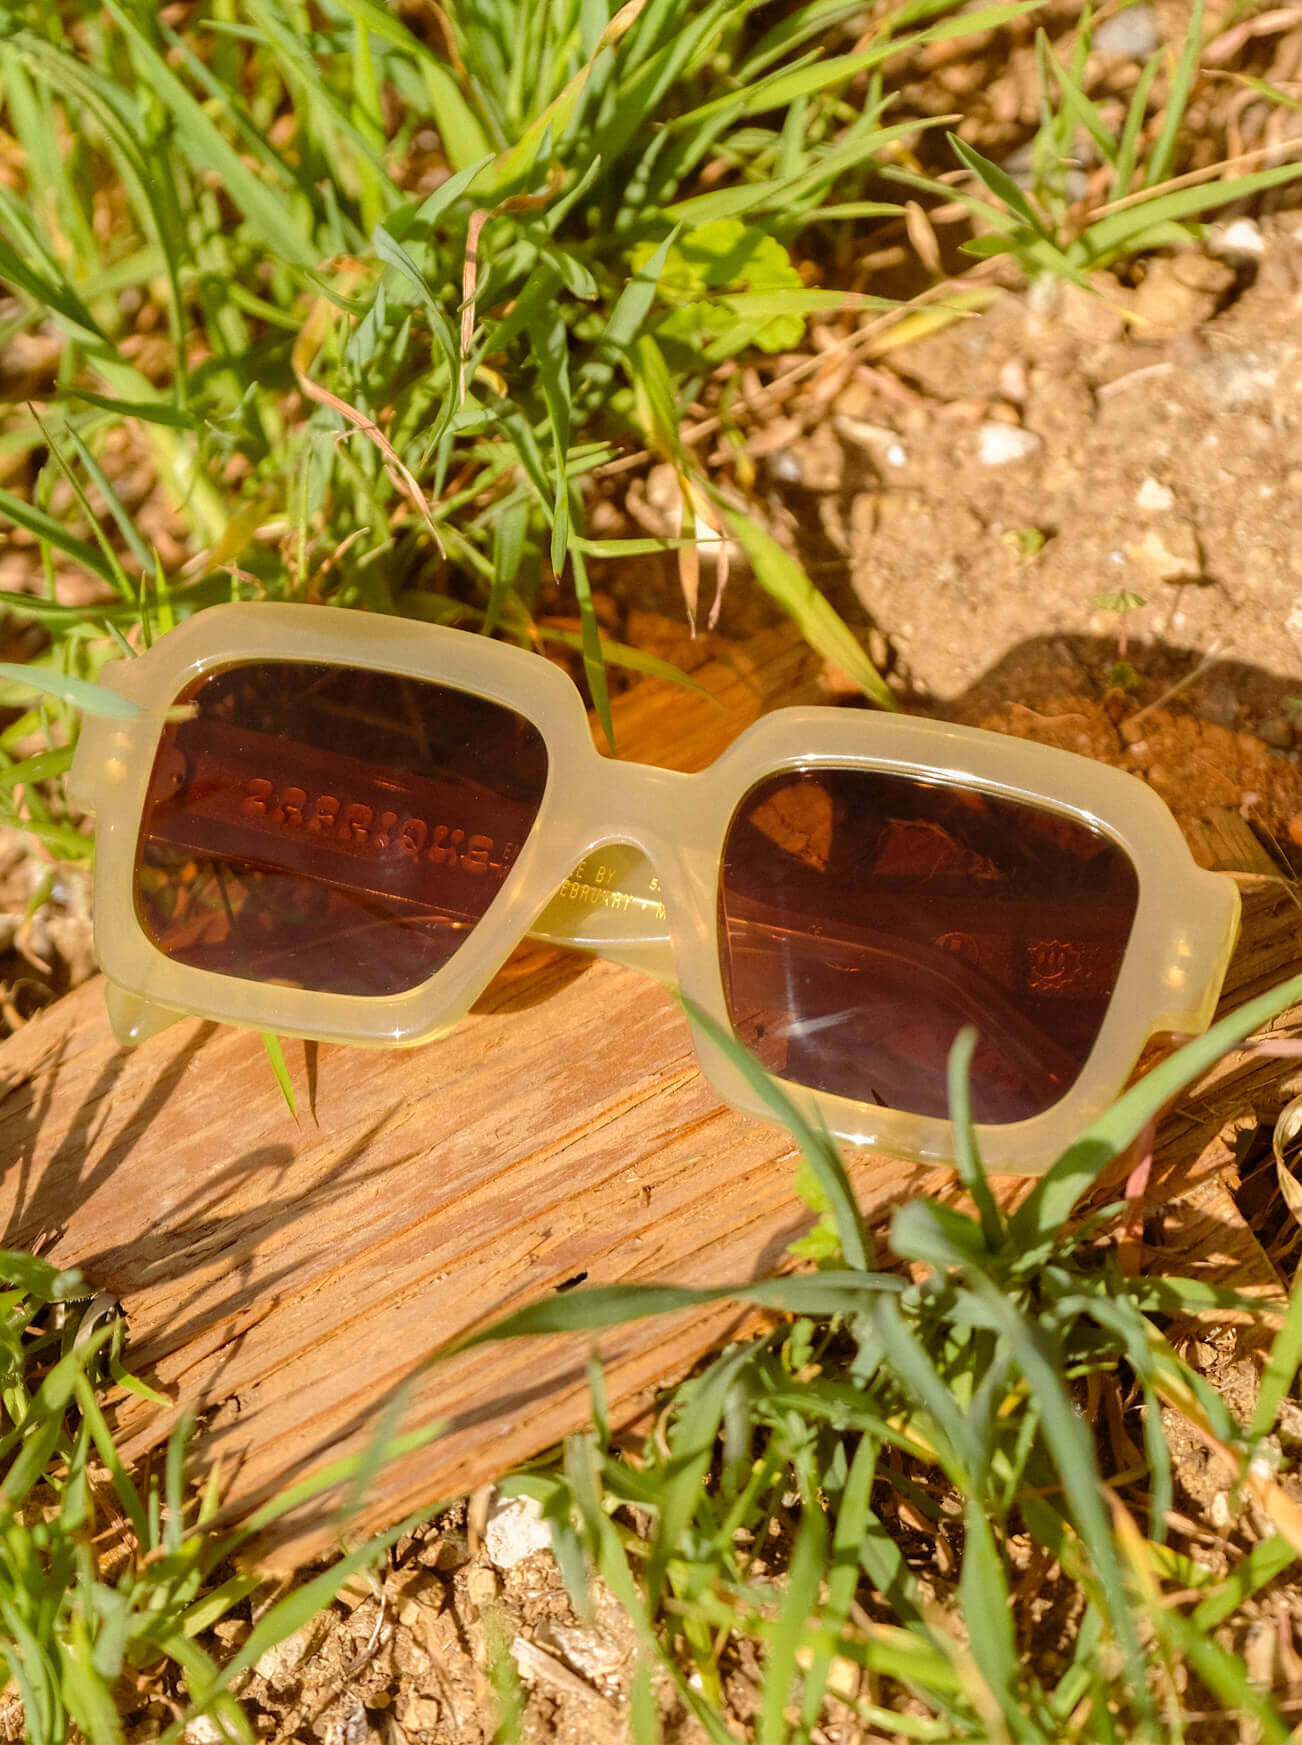 LV SQUARE SUNGLASSES - Sunglasses Villa